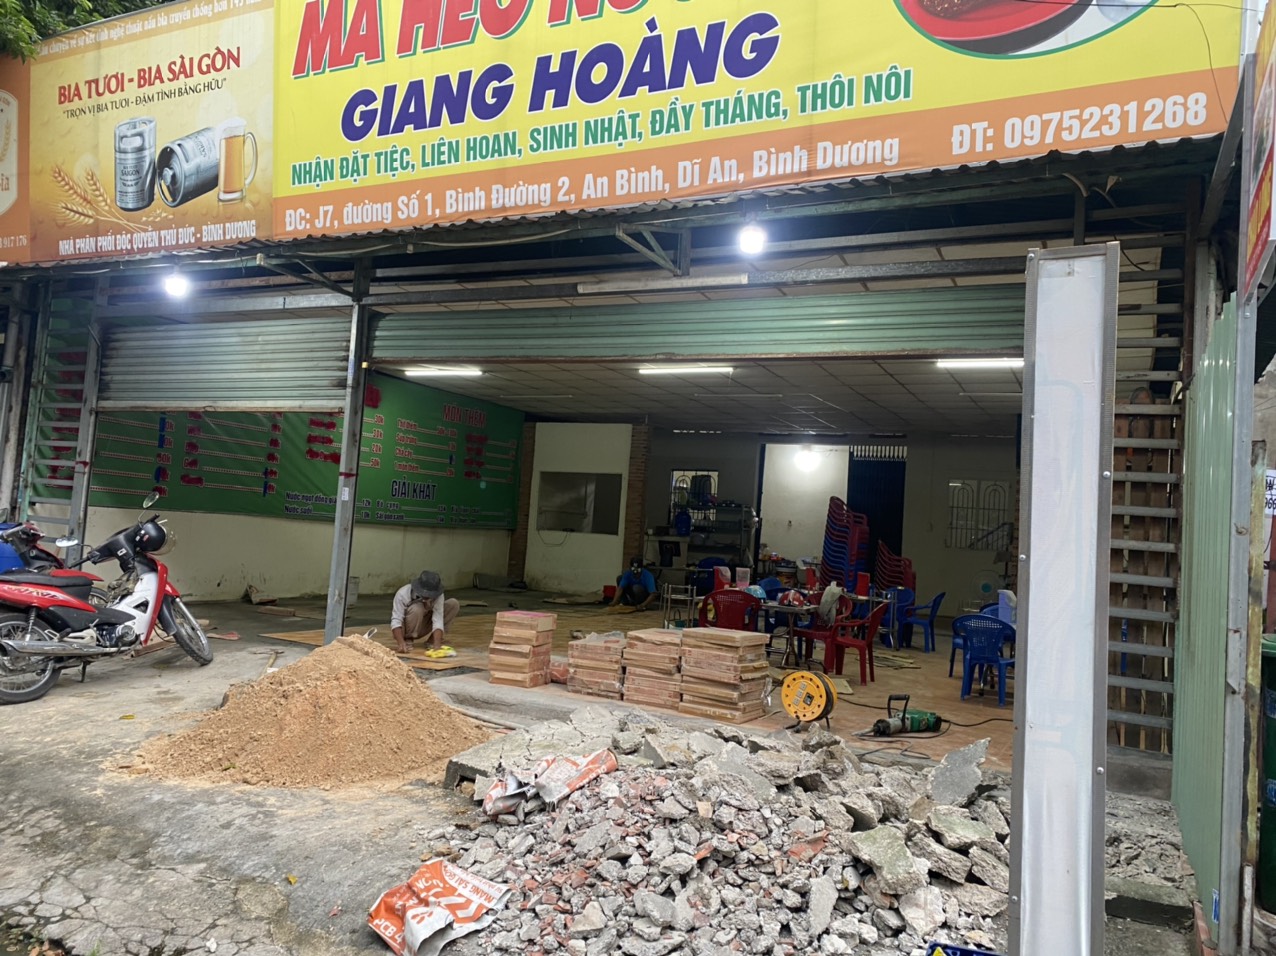 Báo giá sửa chữa nhà trọn gói tại Phú Nhuận - Tp HCM